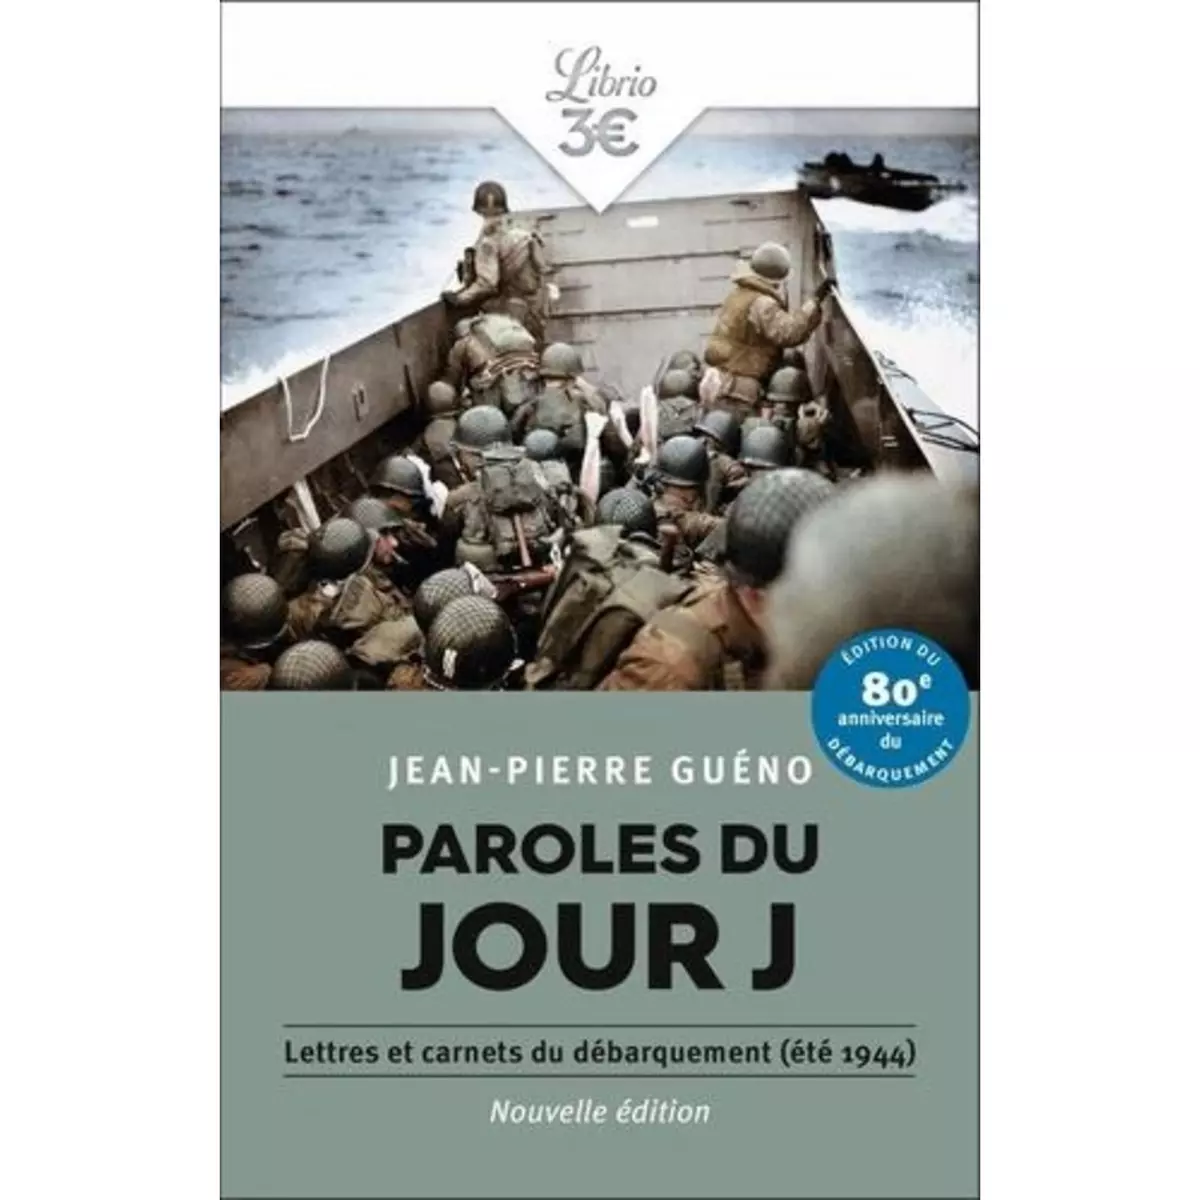  PAROLES DU JOUR J. LETTRES ET CARNETS DU DEBARQUEMENT, ETE 1944, Guéno Jean-Pierre